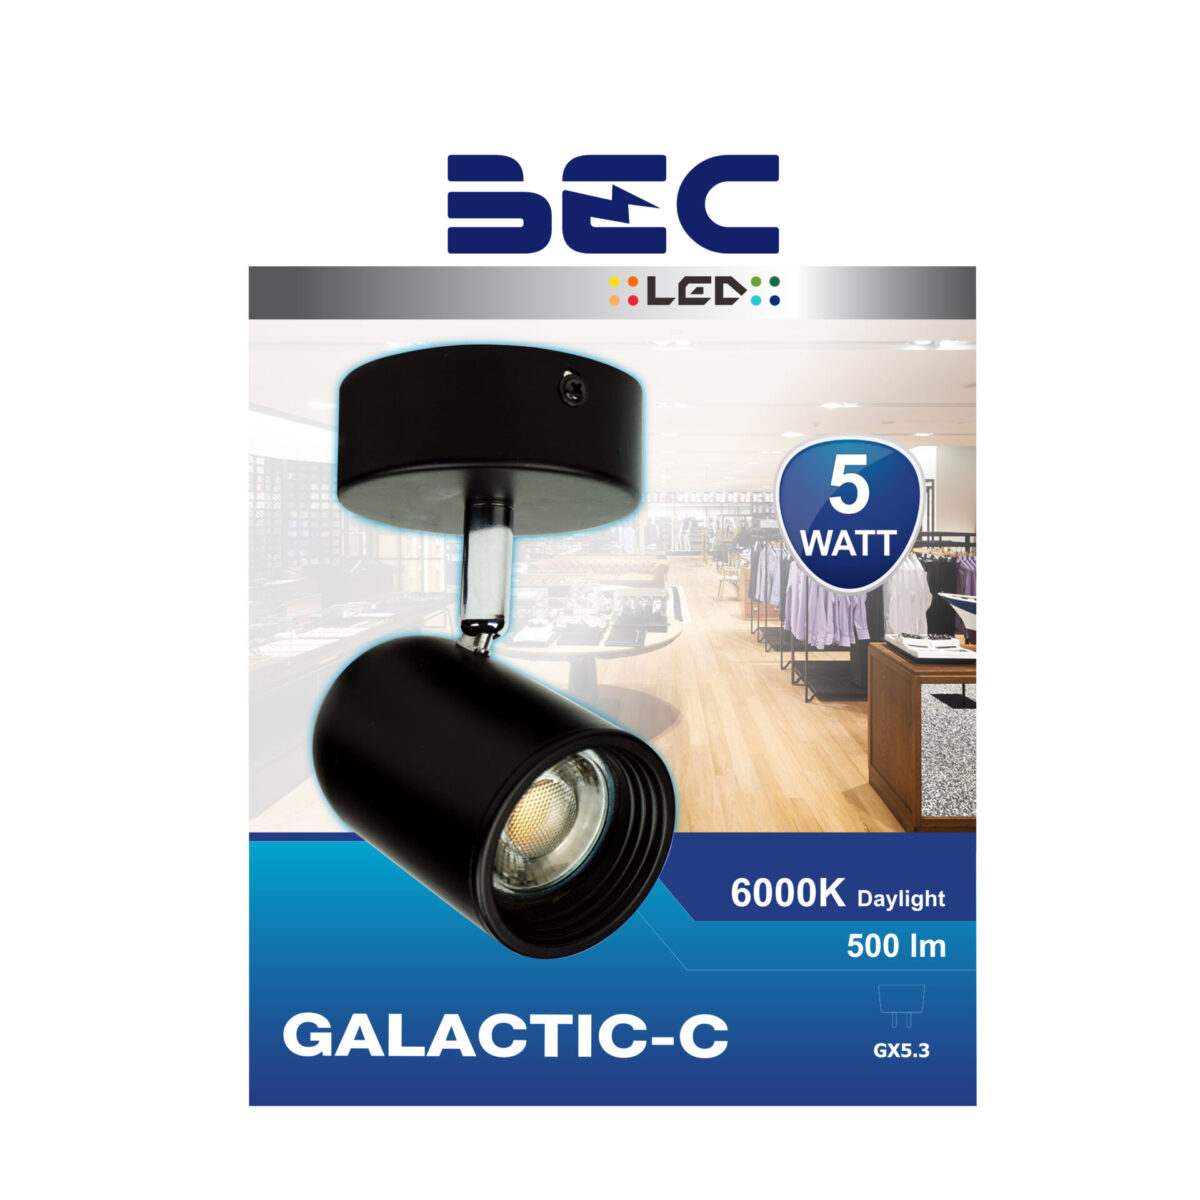 โคมไฟส่องสินค้า LED รุ่น Galactic-C